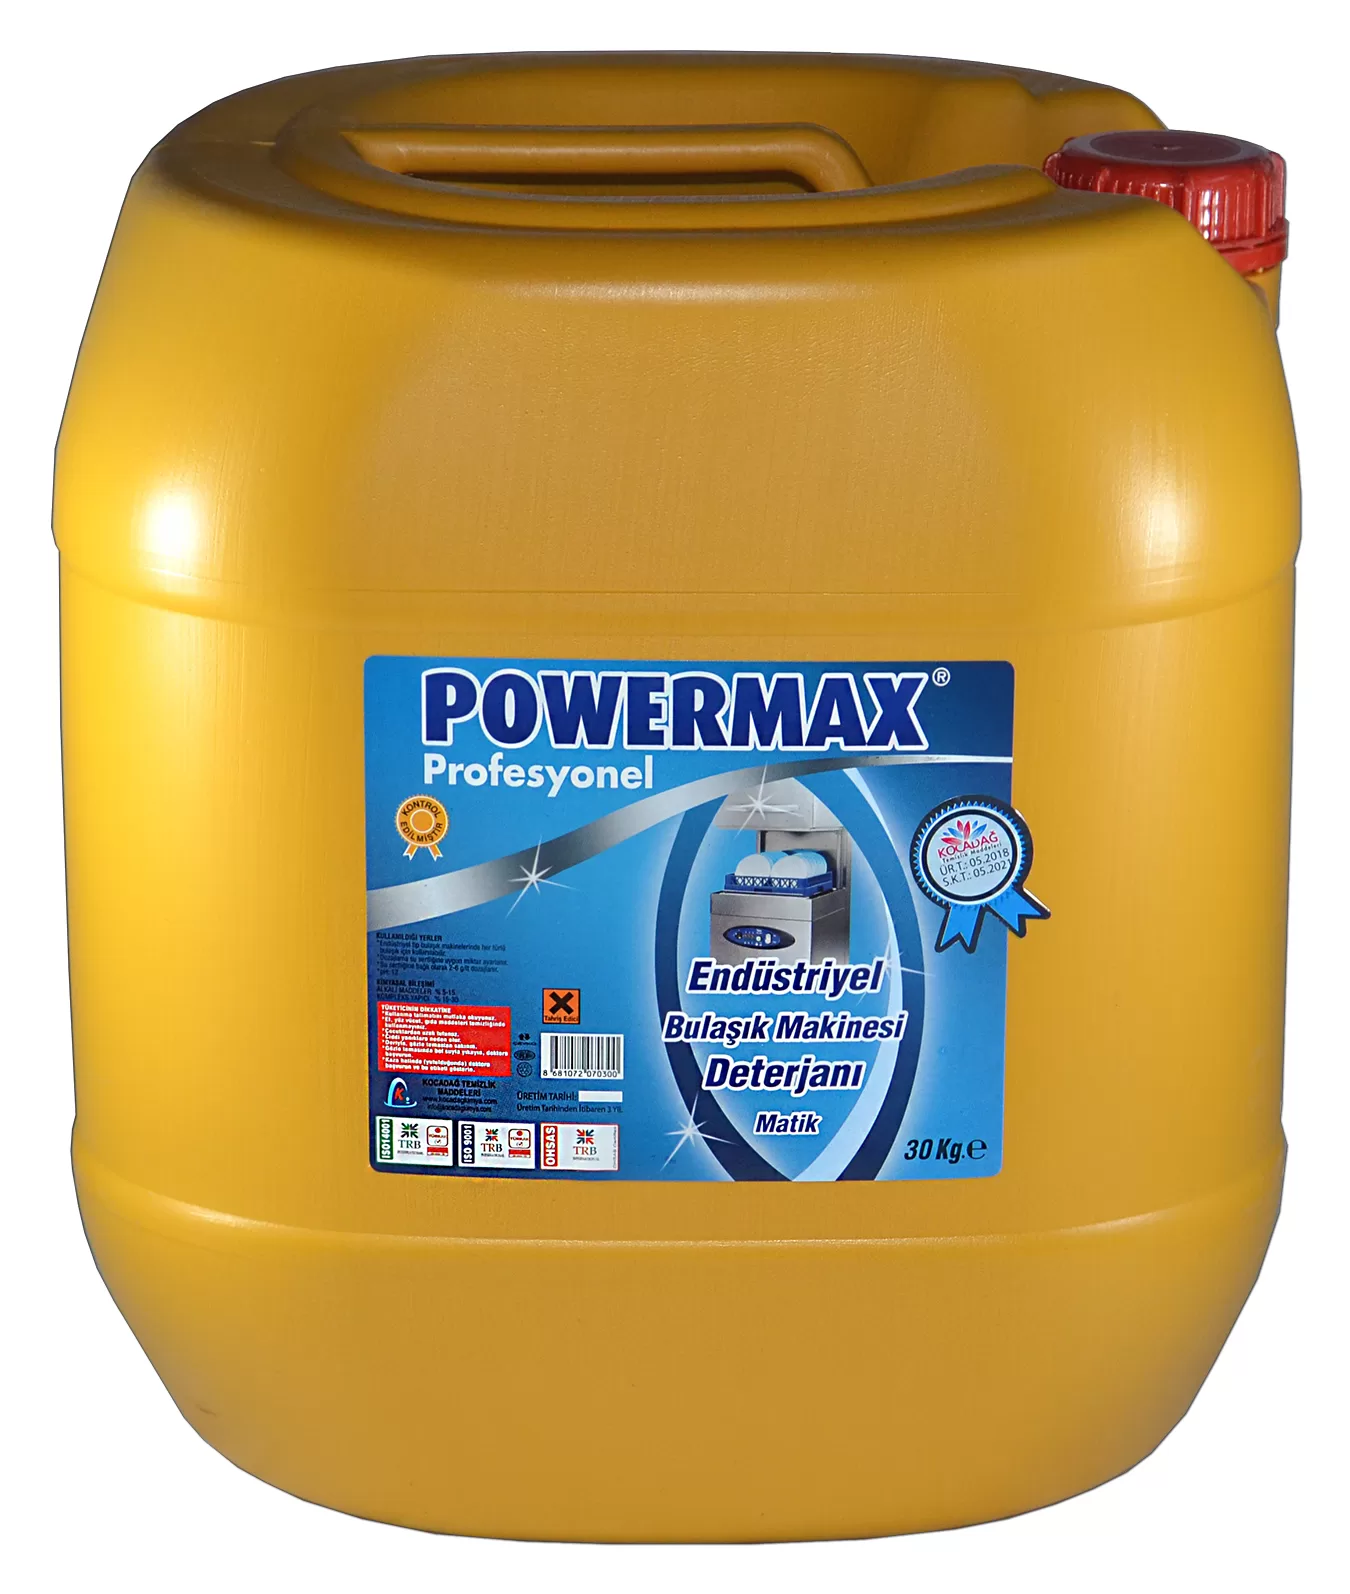 Powermax Endustriyel Bulaşık Makinesi Deterjanı